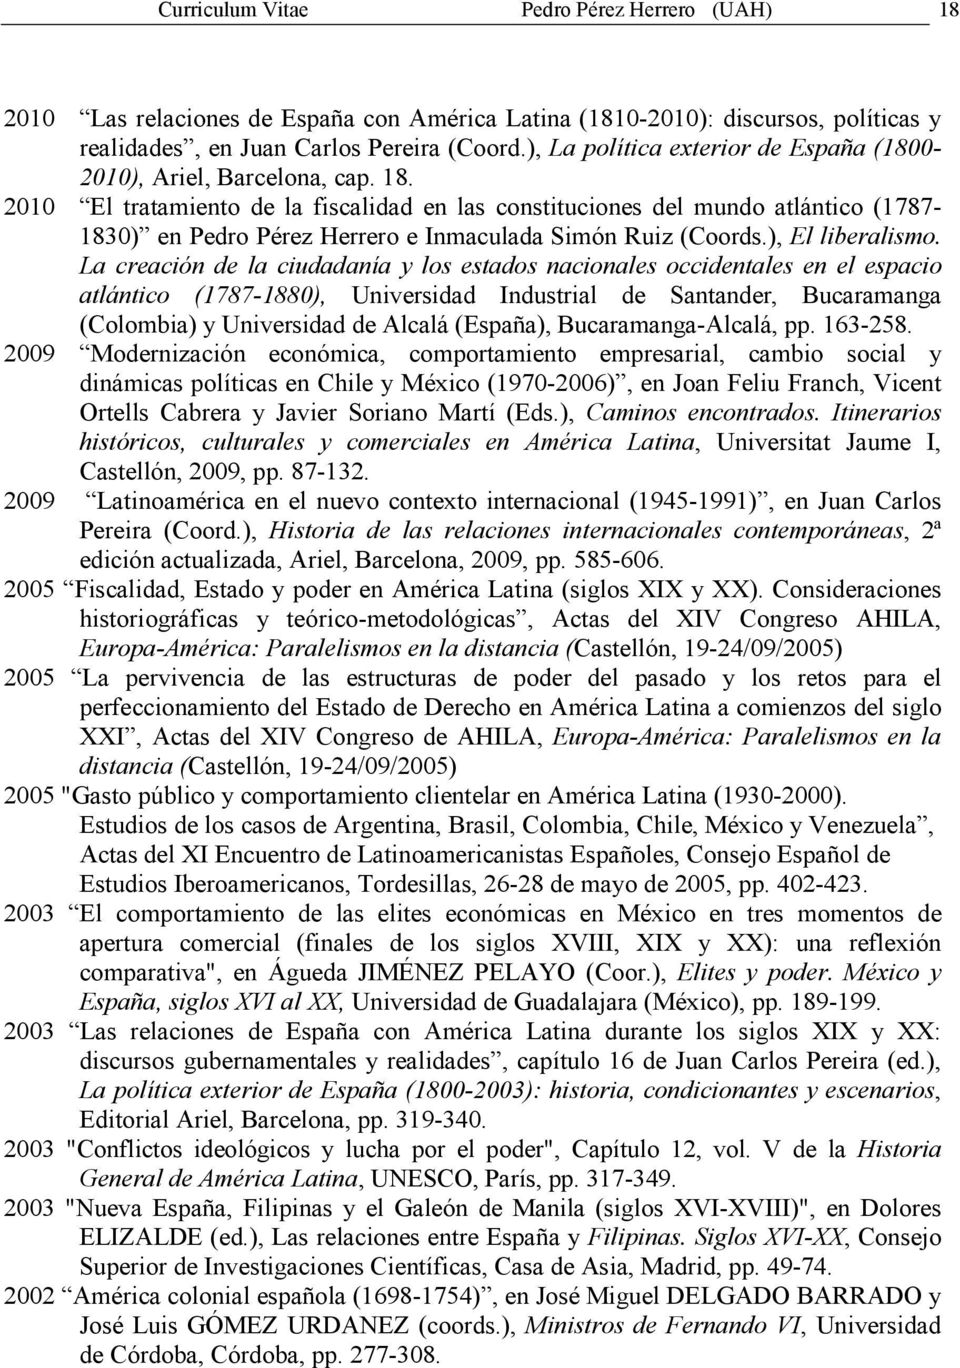 2010 El tratamiento de la fiscalidad en las constituciones del mundo atlántico (1787-1830) en Pedro Pérez Herrero e Inmaculada Simón Ruiz (Coords.), El liberalismo.